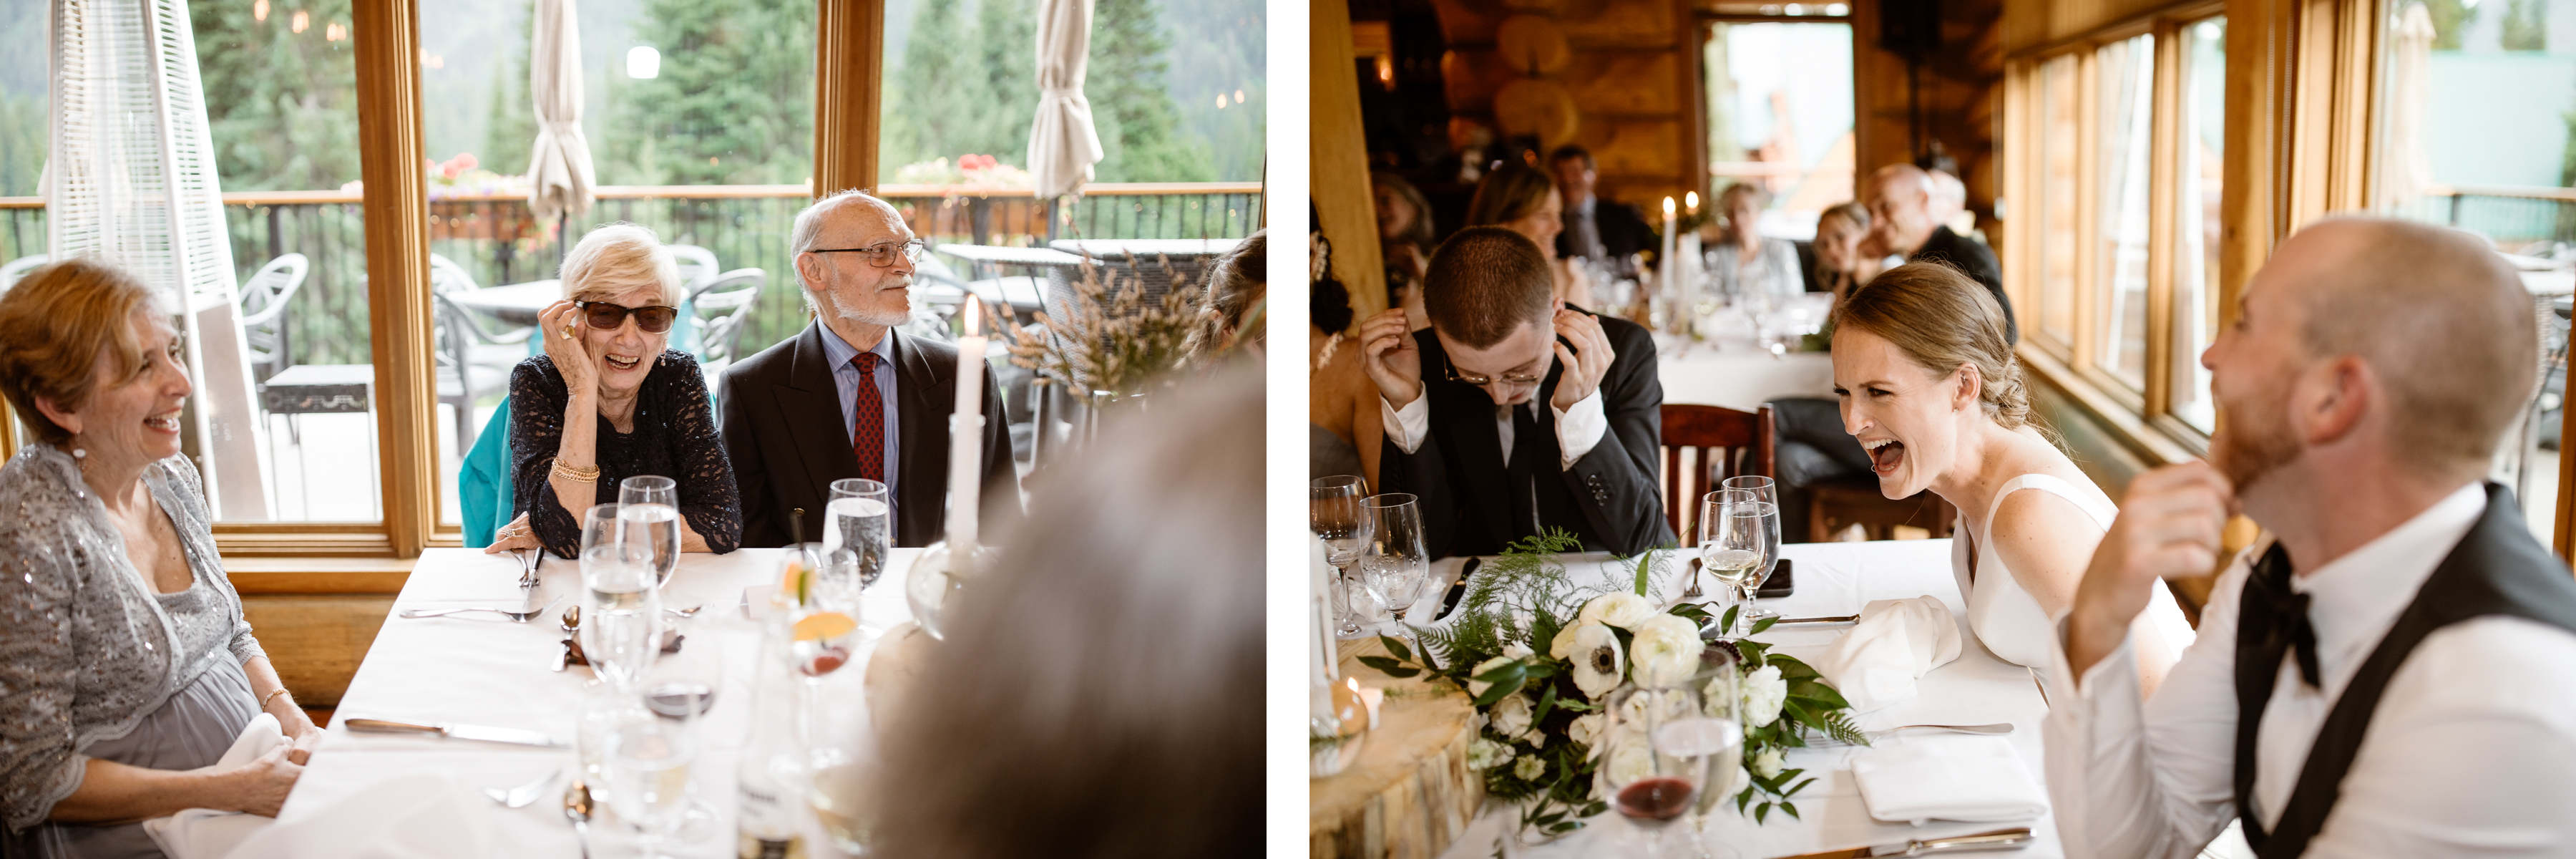 Fernie Wedding Photographers at Island Lake Lodge - Image 40